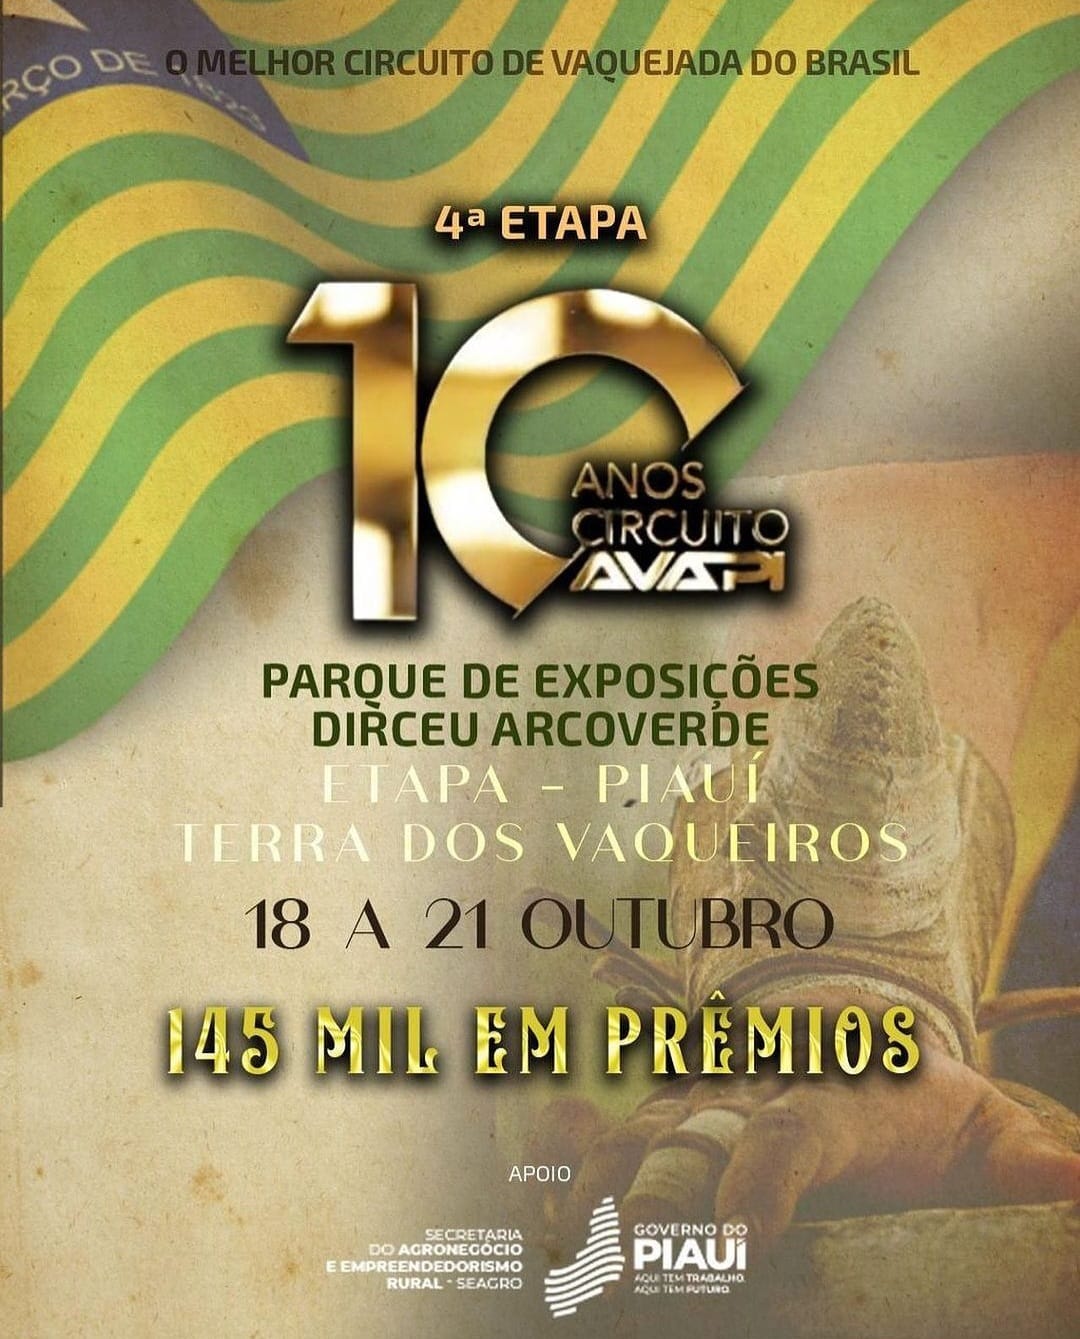 Os Mestres da Locução na IV Etapa do Melhor Circuito de Vaquejada do Brasil 🎤